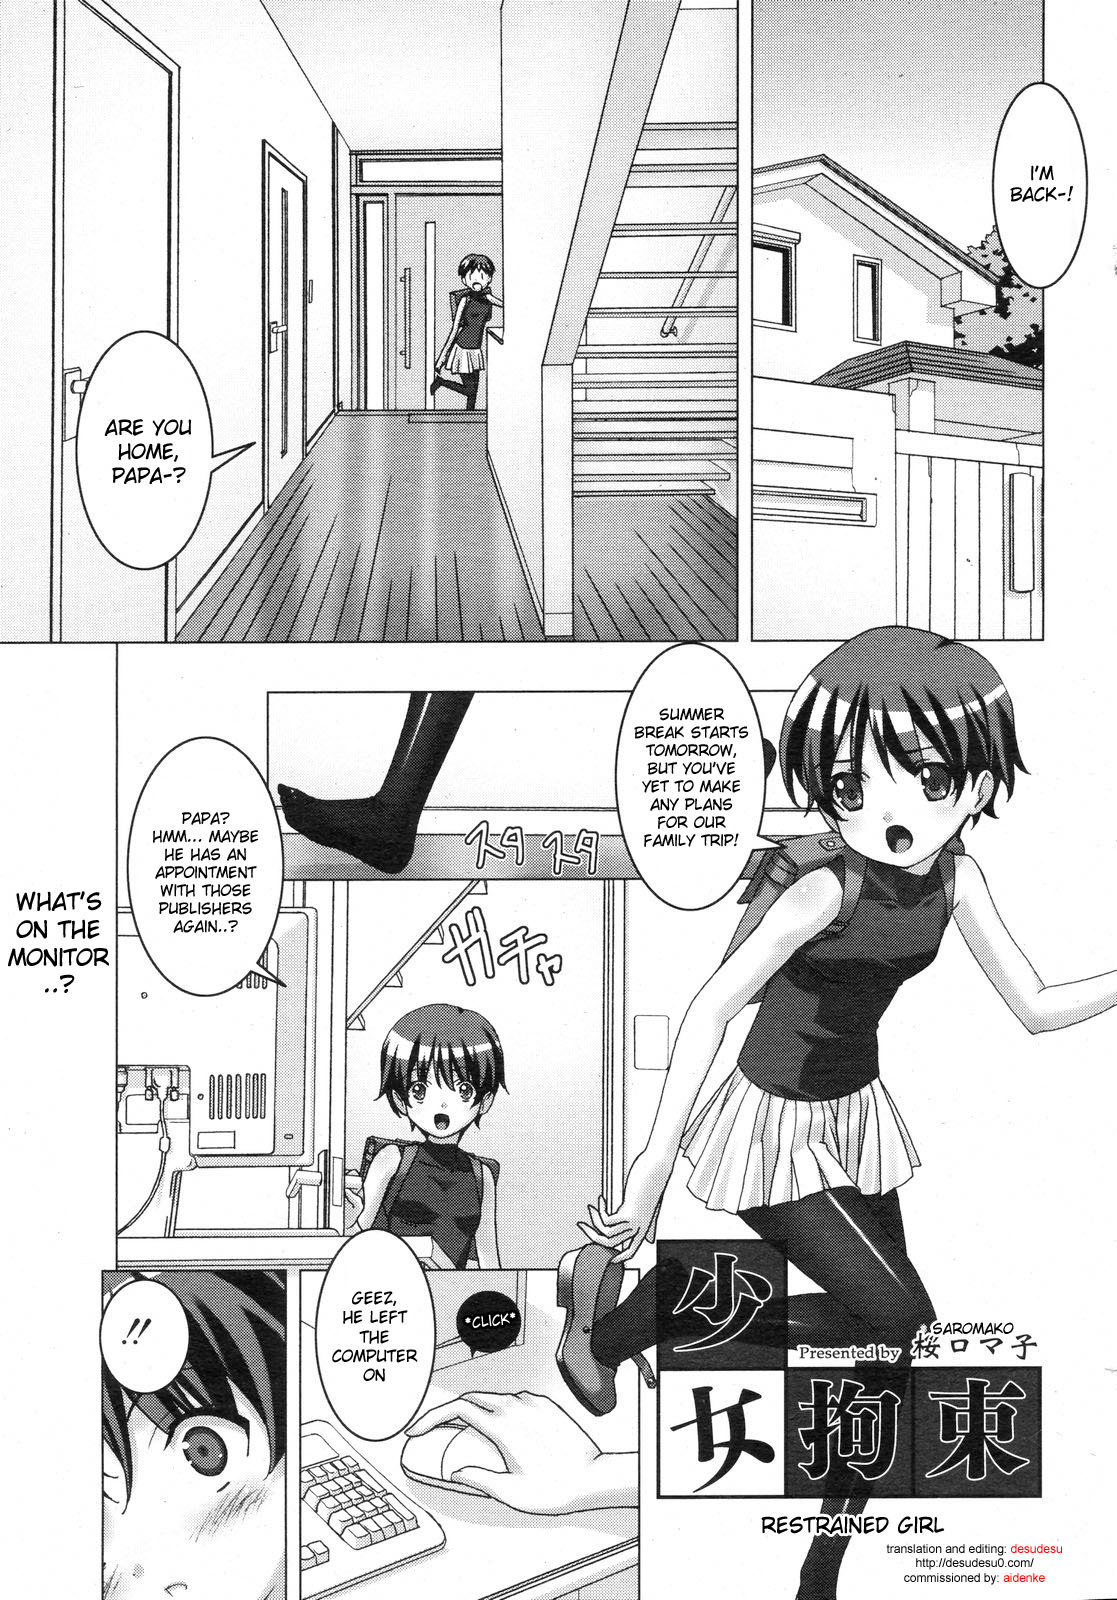 Restrained Girl hentai manga